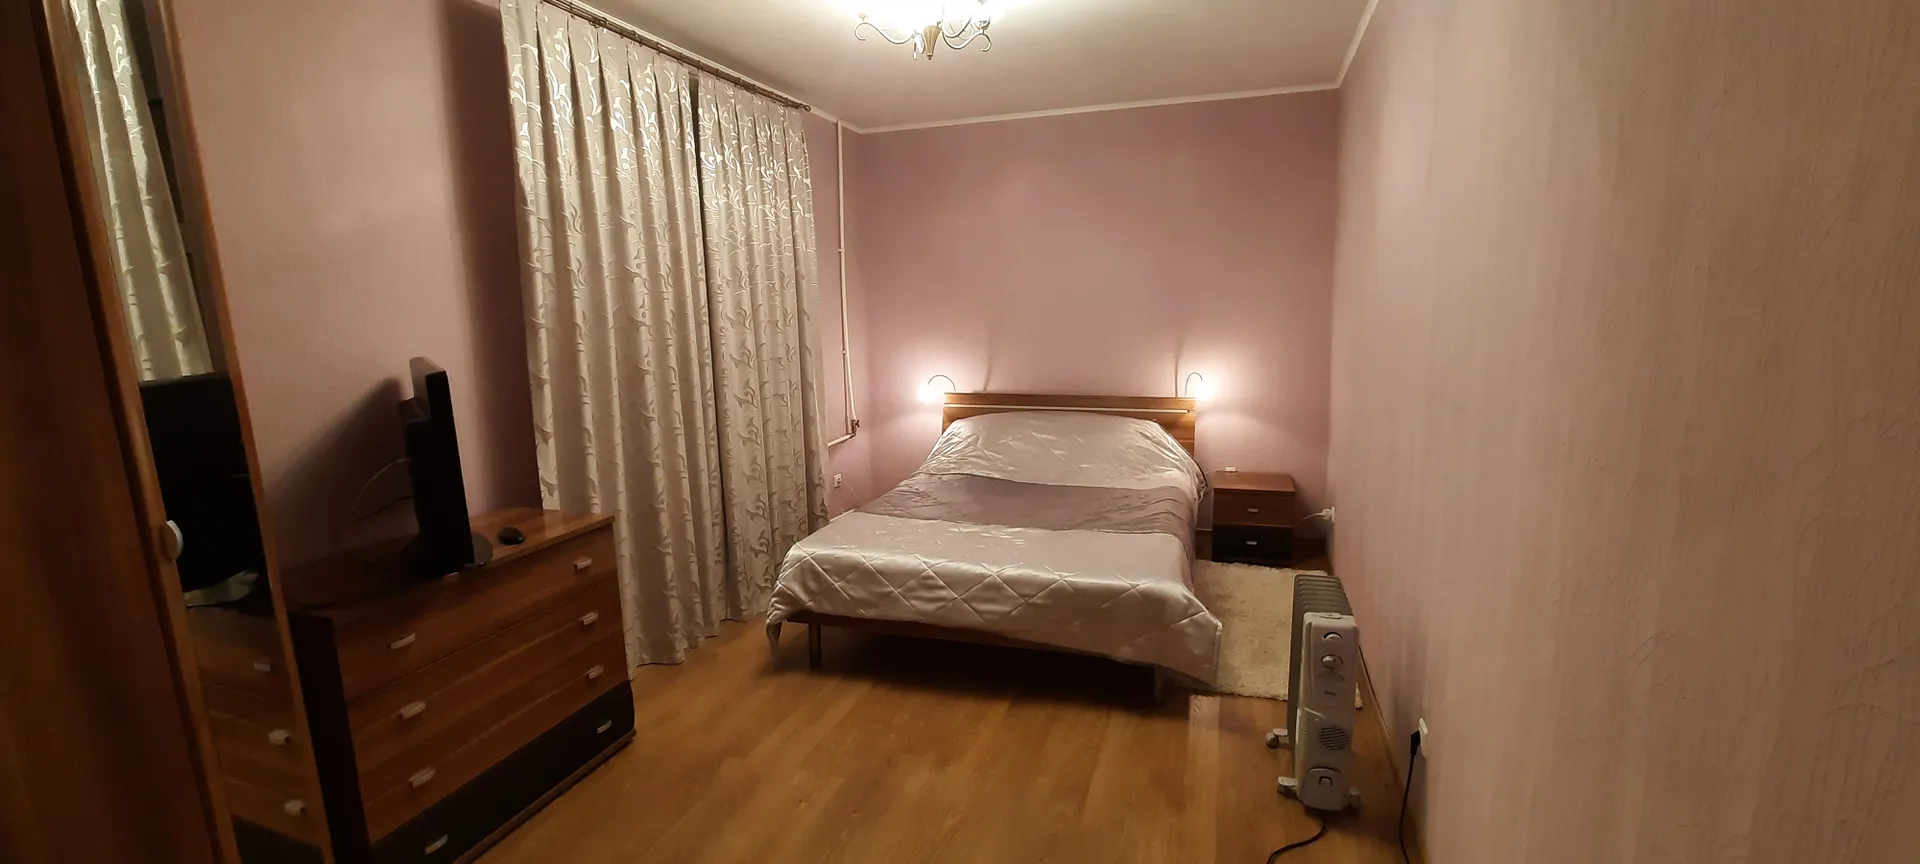 Спальня №3: широкая двуспальная кровать, шкаф, комод, тумбочка, телевизор. 